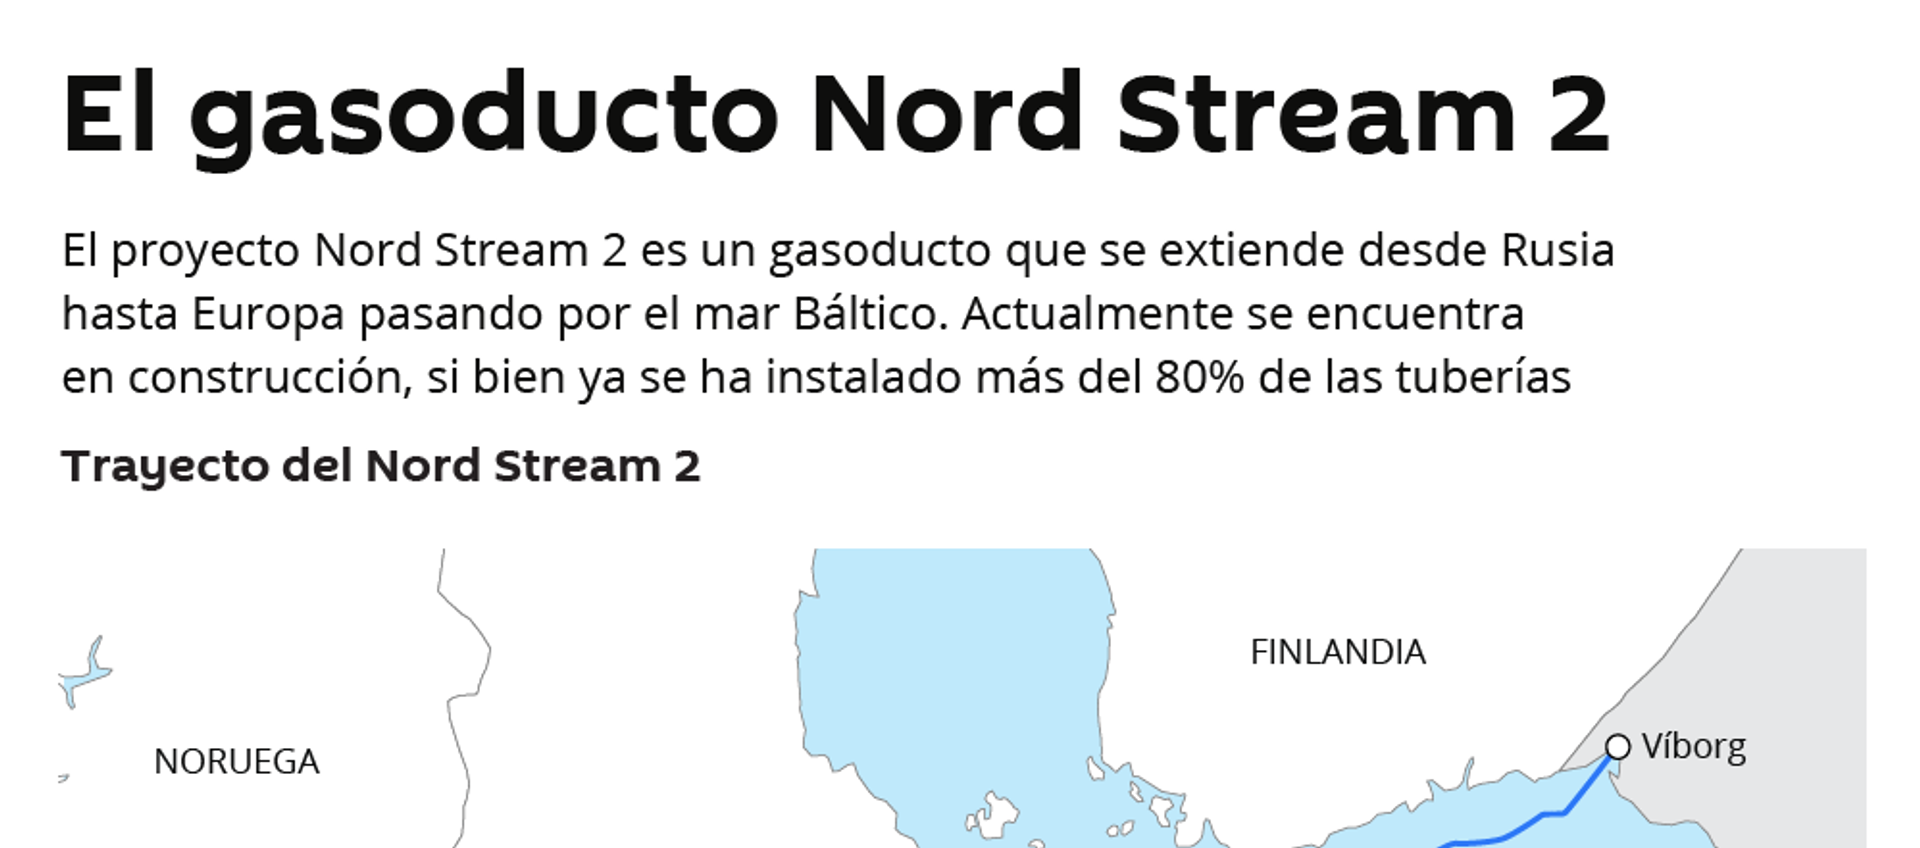 El gasoducto Nord Stream 2, al detalle - Sputnik Mundo, 1920, 07.10.2019